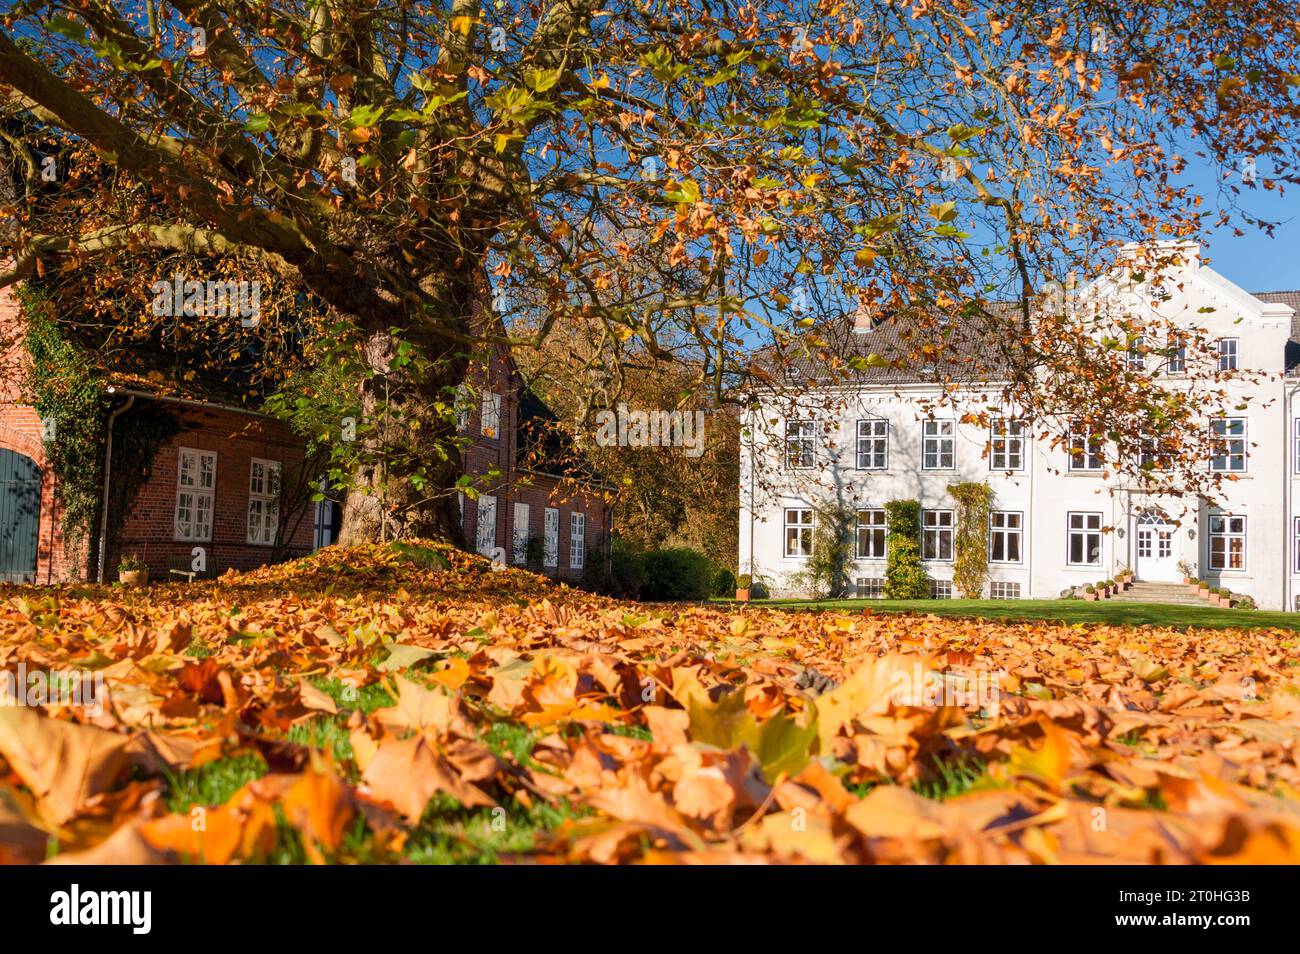 Buntes Herbstlaub auf der Wiese vor einem Herrenhaus Stock Photo